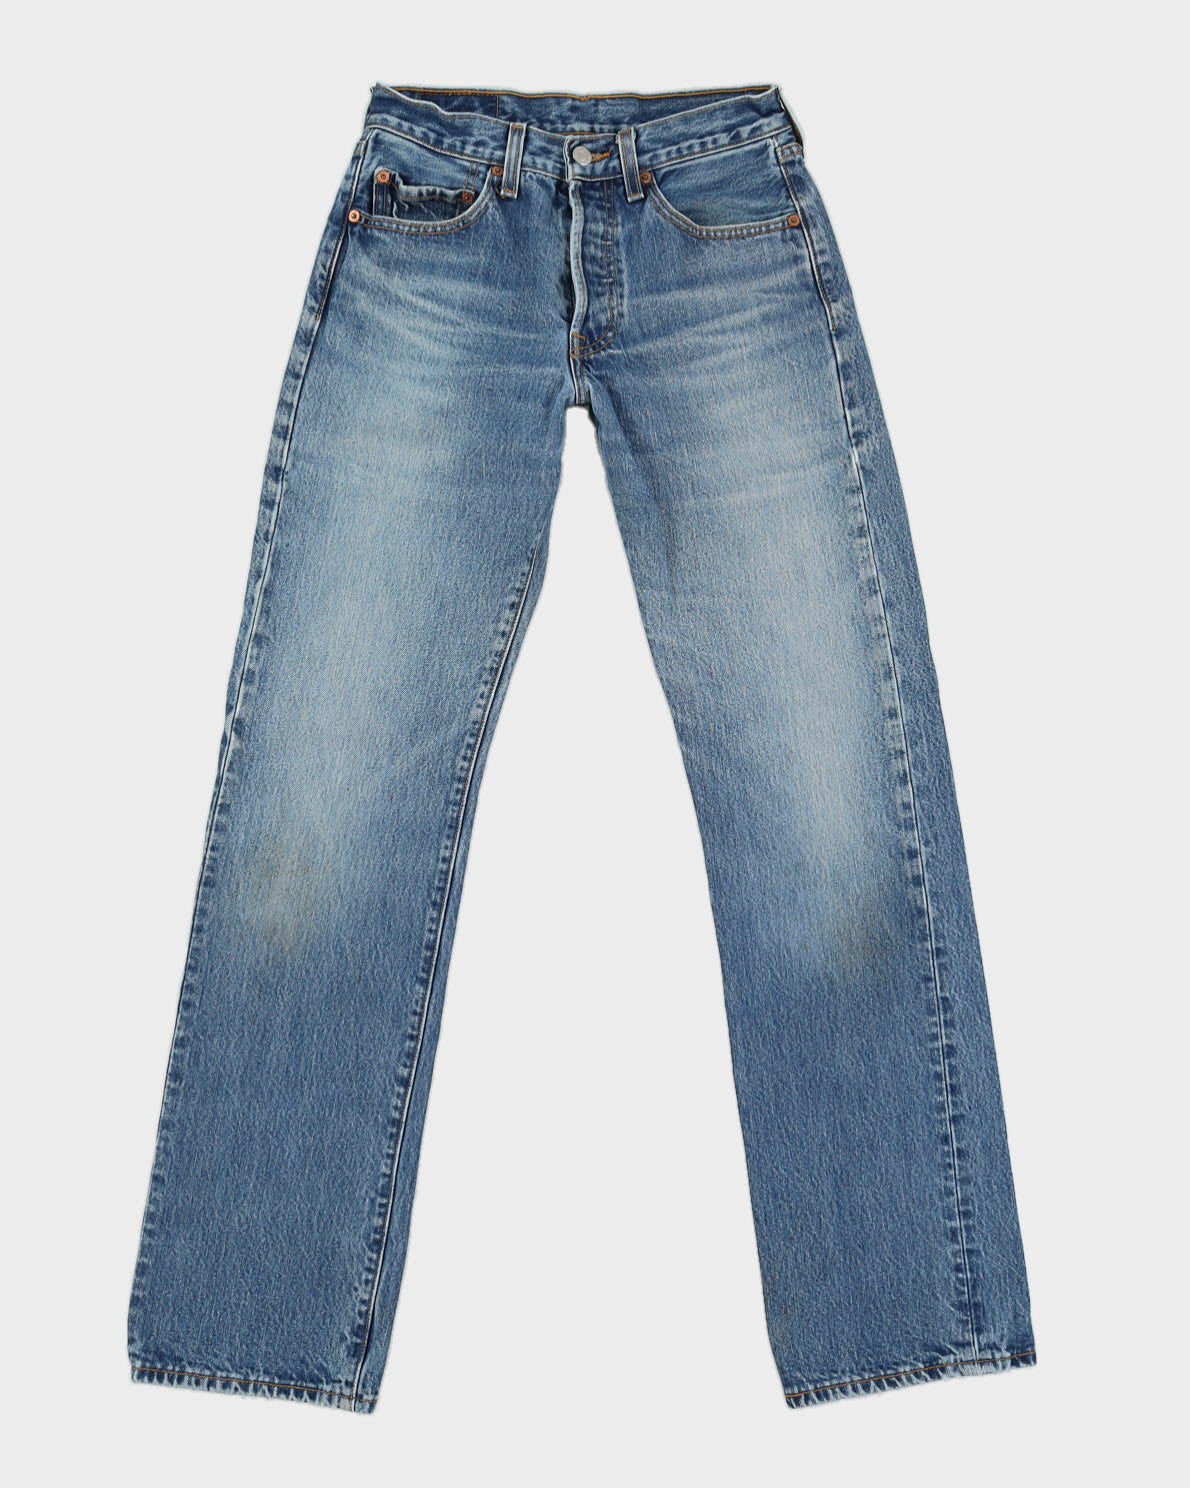 Blue Levi's 501Jeans -W27 L33